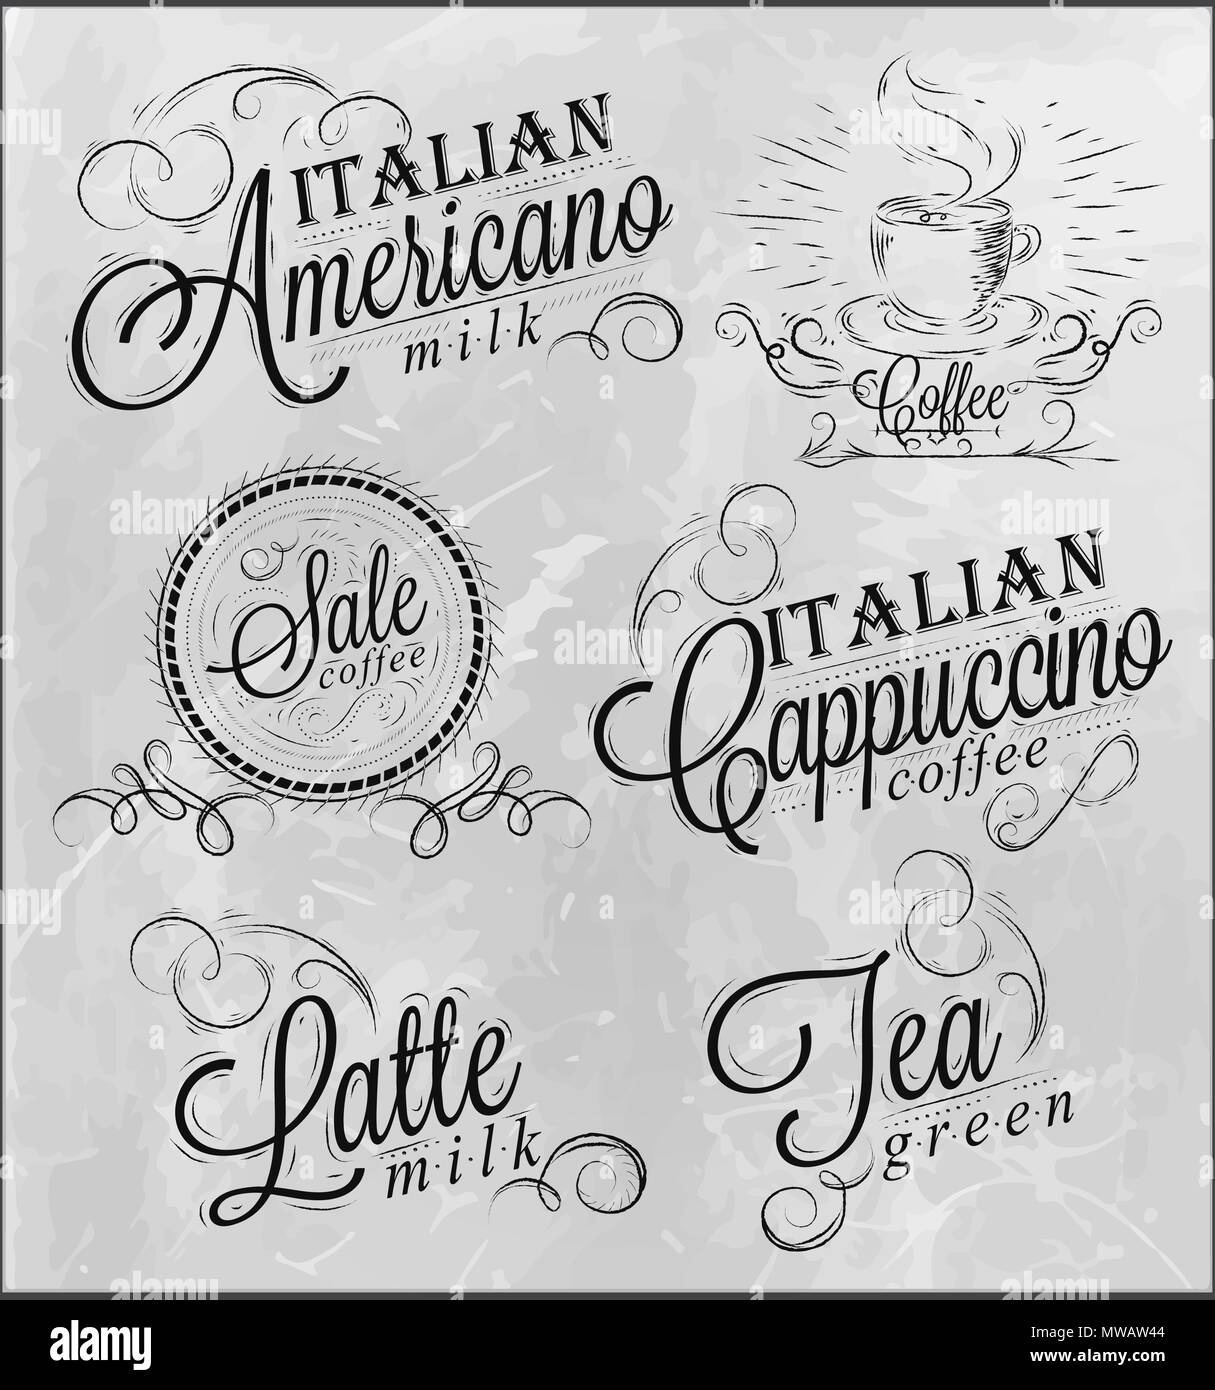 Namen von Kaffeespezialitäten Espresso, Latte, stilisierte Inschriften in Kohle auf einer Tafel Stock Vektor